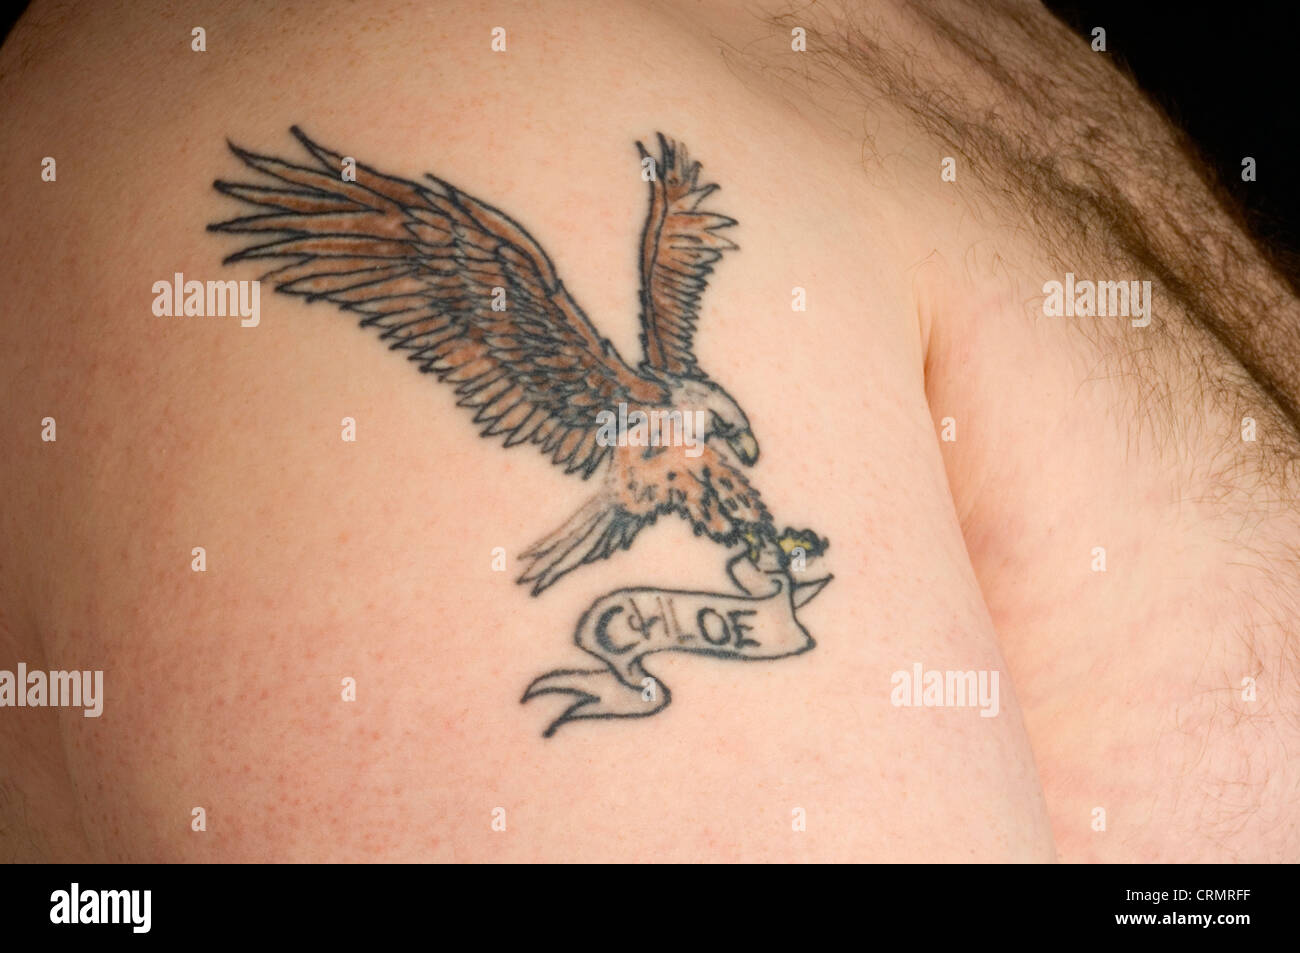 Nahaufnahme von einem Adler Tattoo mit Chloe Name auf dem Arm eines Mannes. Stockfoto